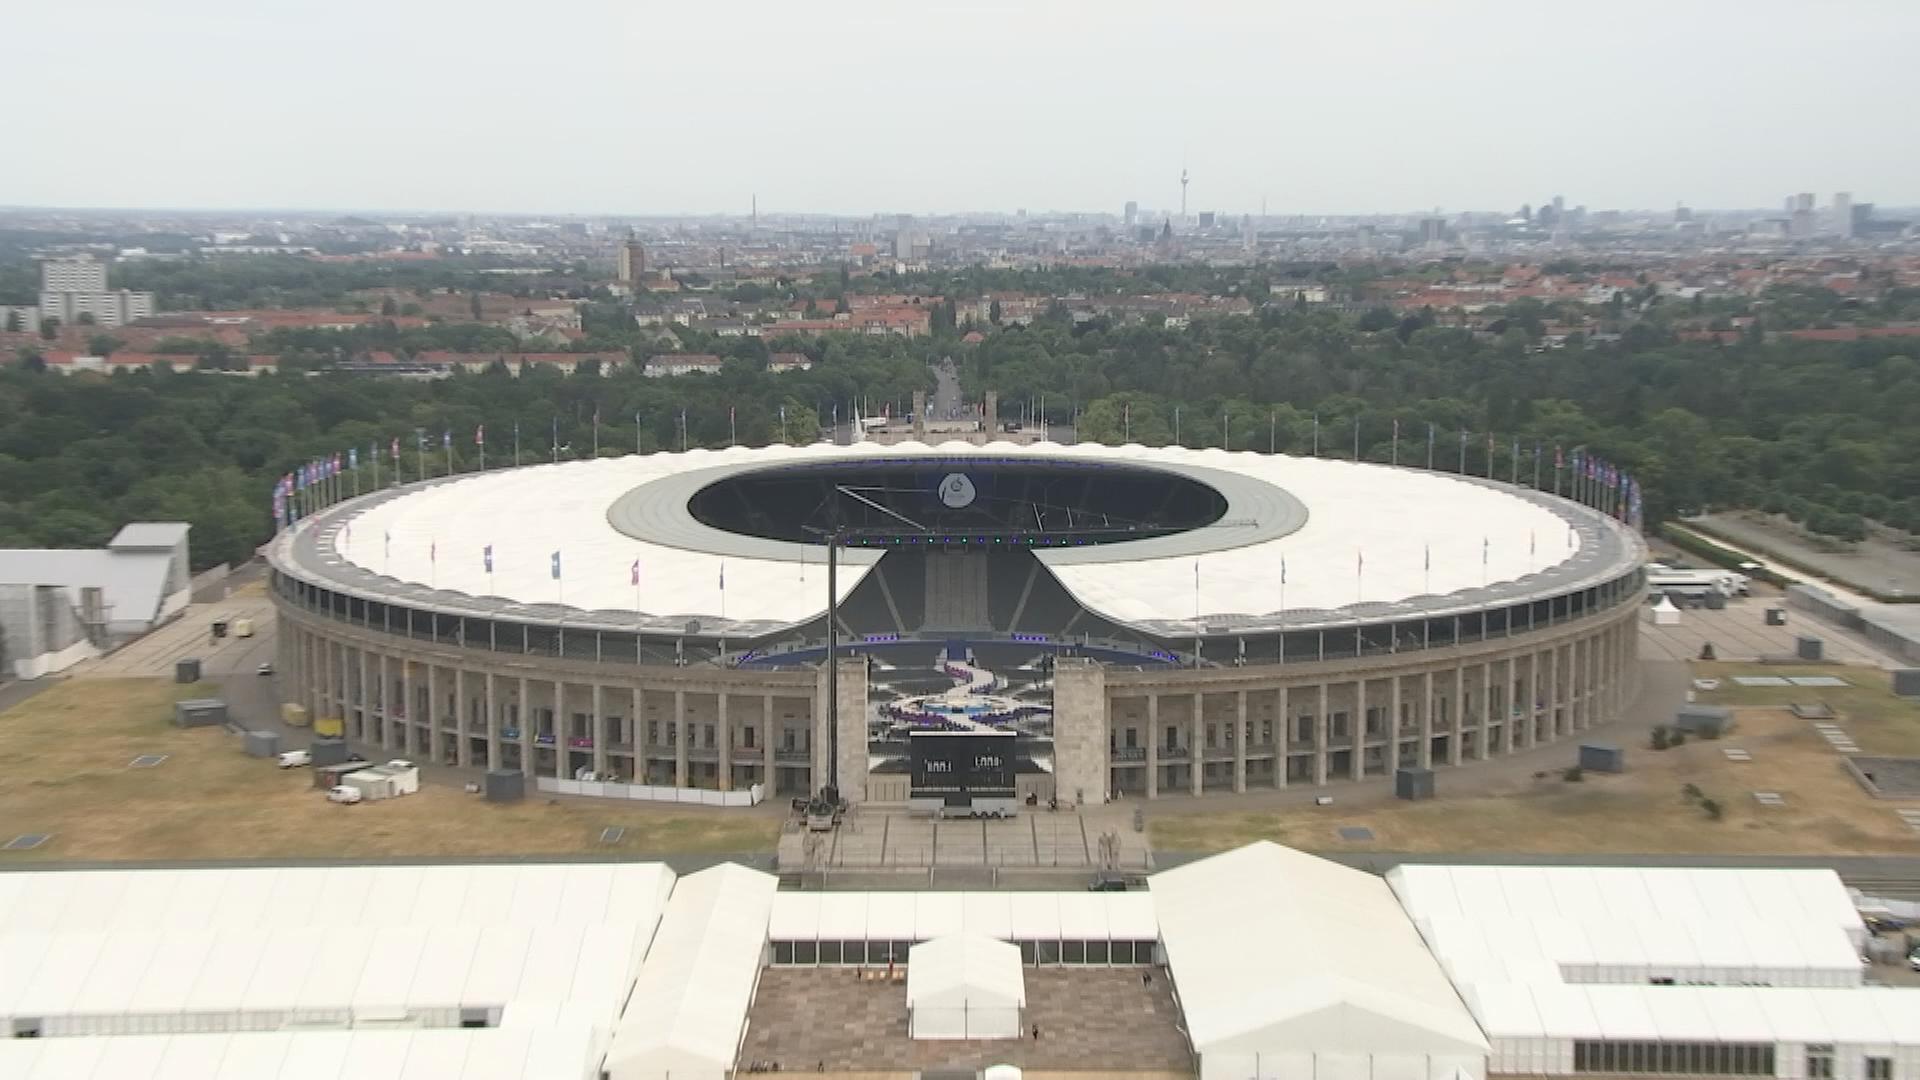 Auf dem Bild ist das Olympiastadion in Berlin zu sehen.